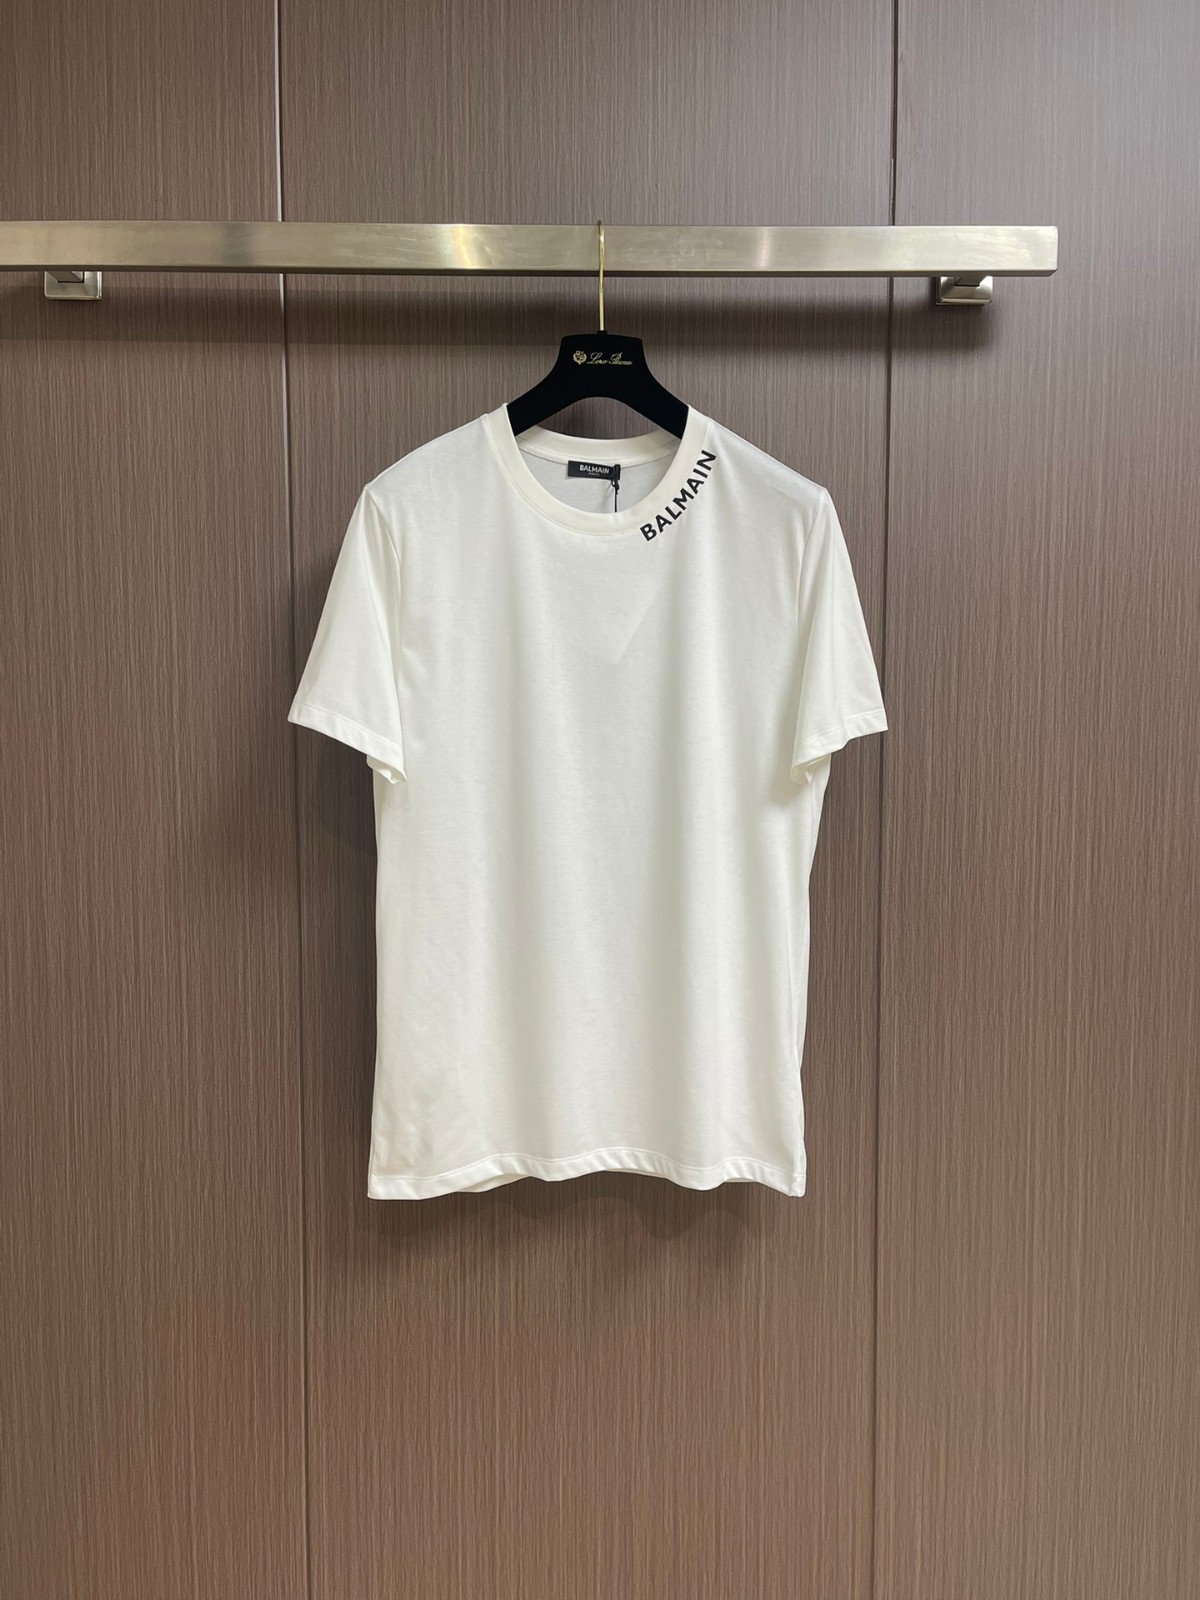 シンプル ロゴ入り クルーネック 半袖Tシャツ バルマン Tシャツ コピー ホワイト